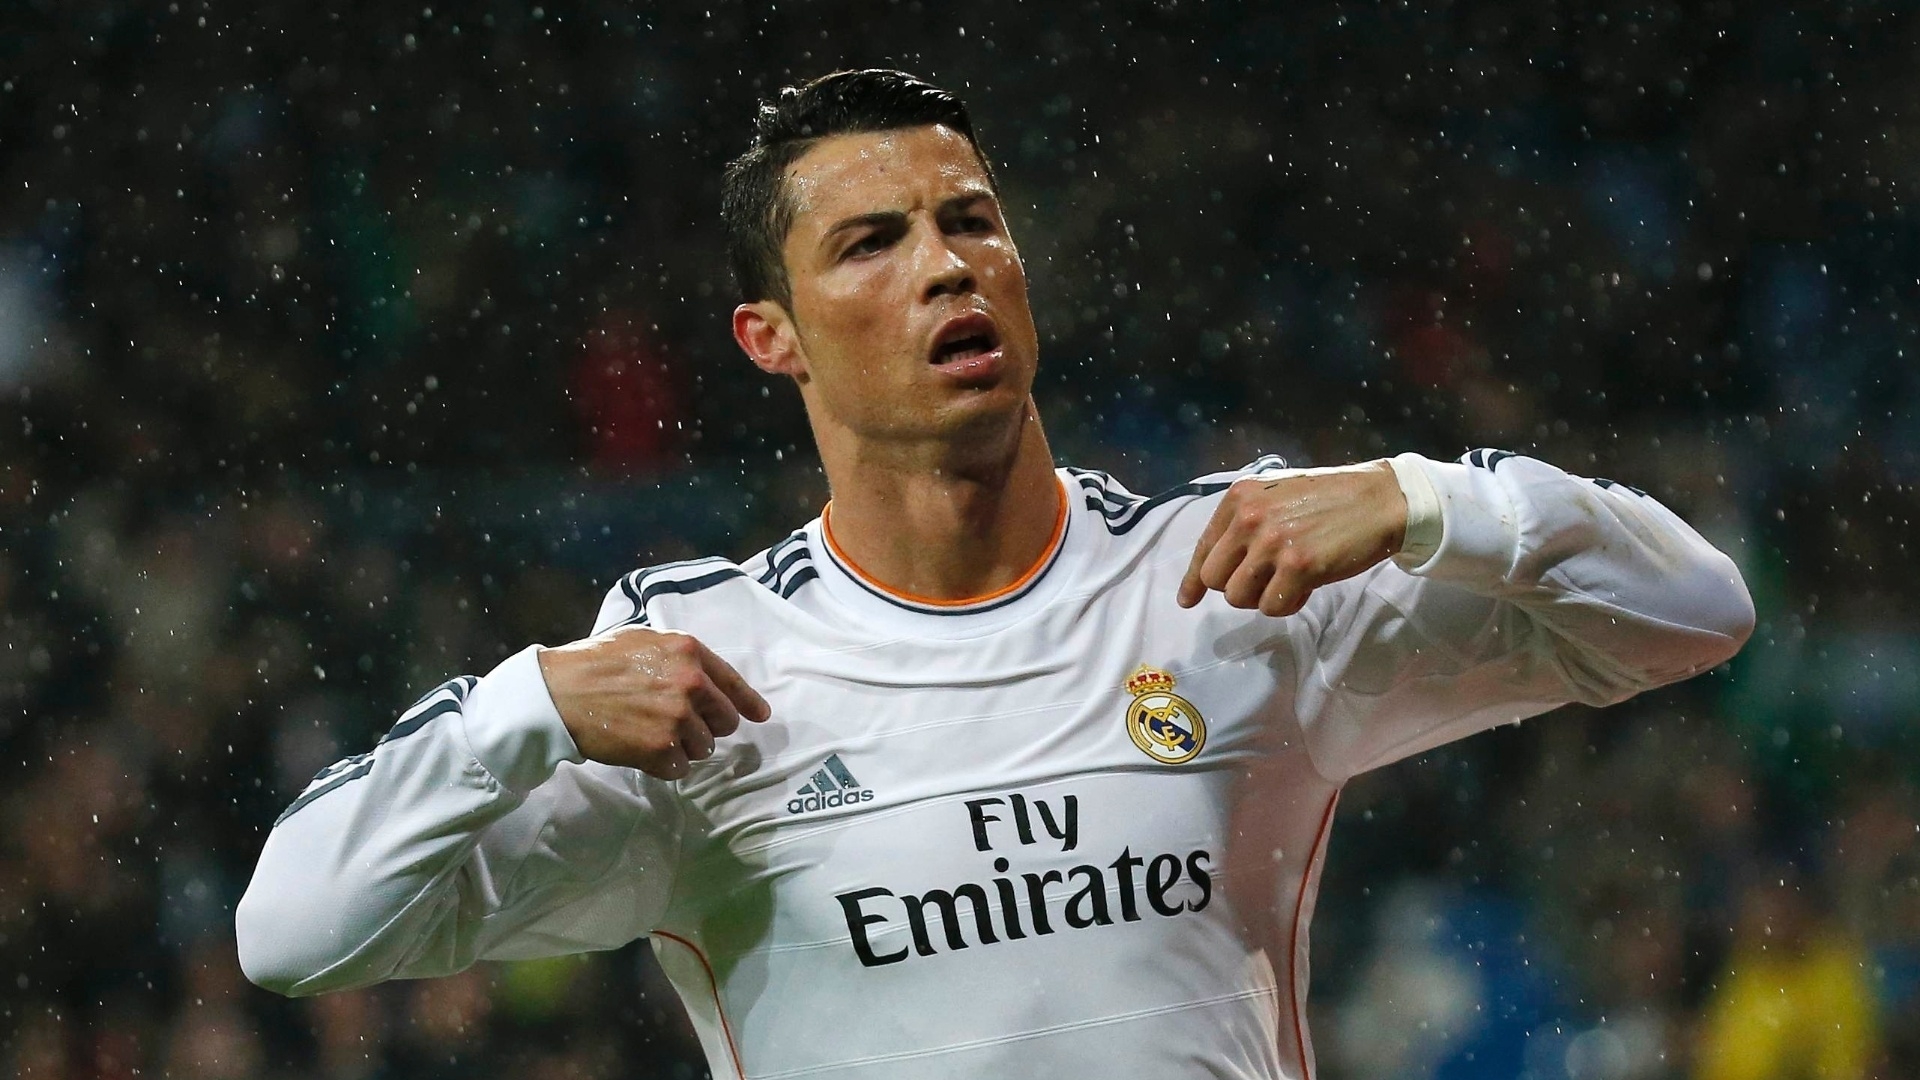 Cristiano Ronaldo in Rain for 1920 x 1080 HDTV 1080p resolution